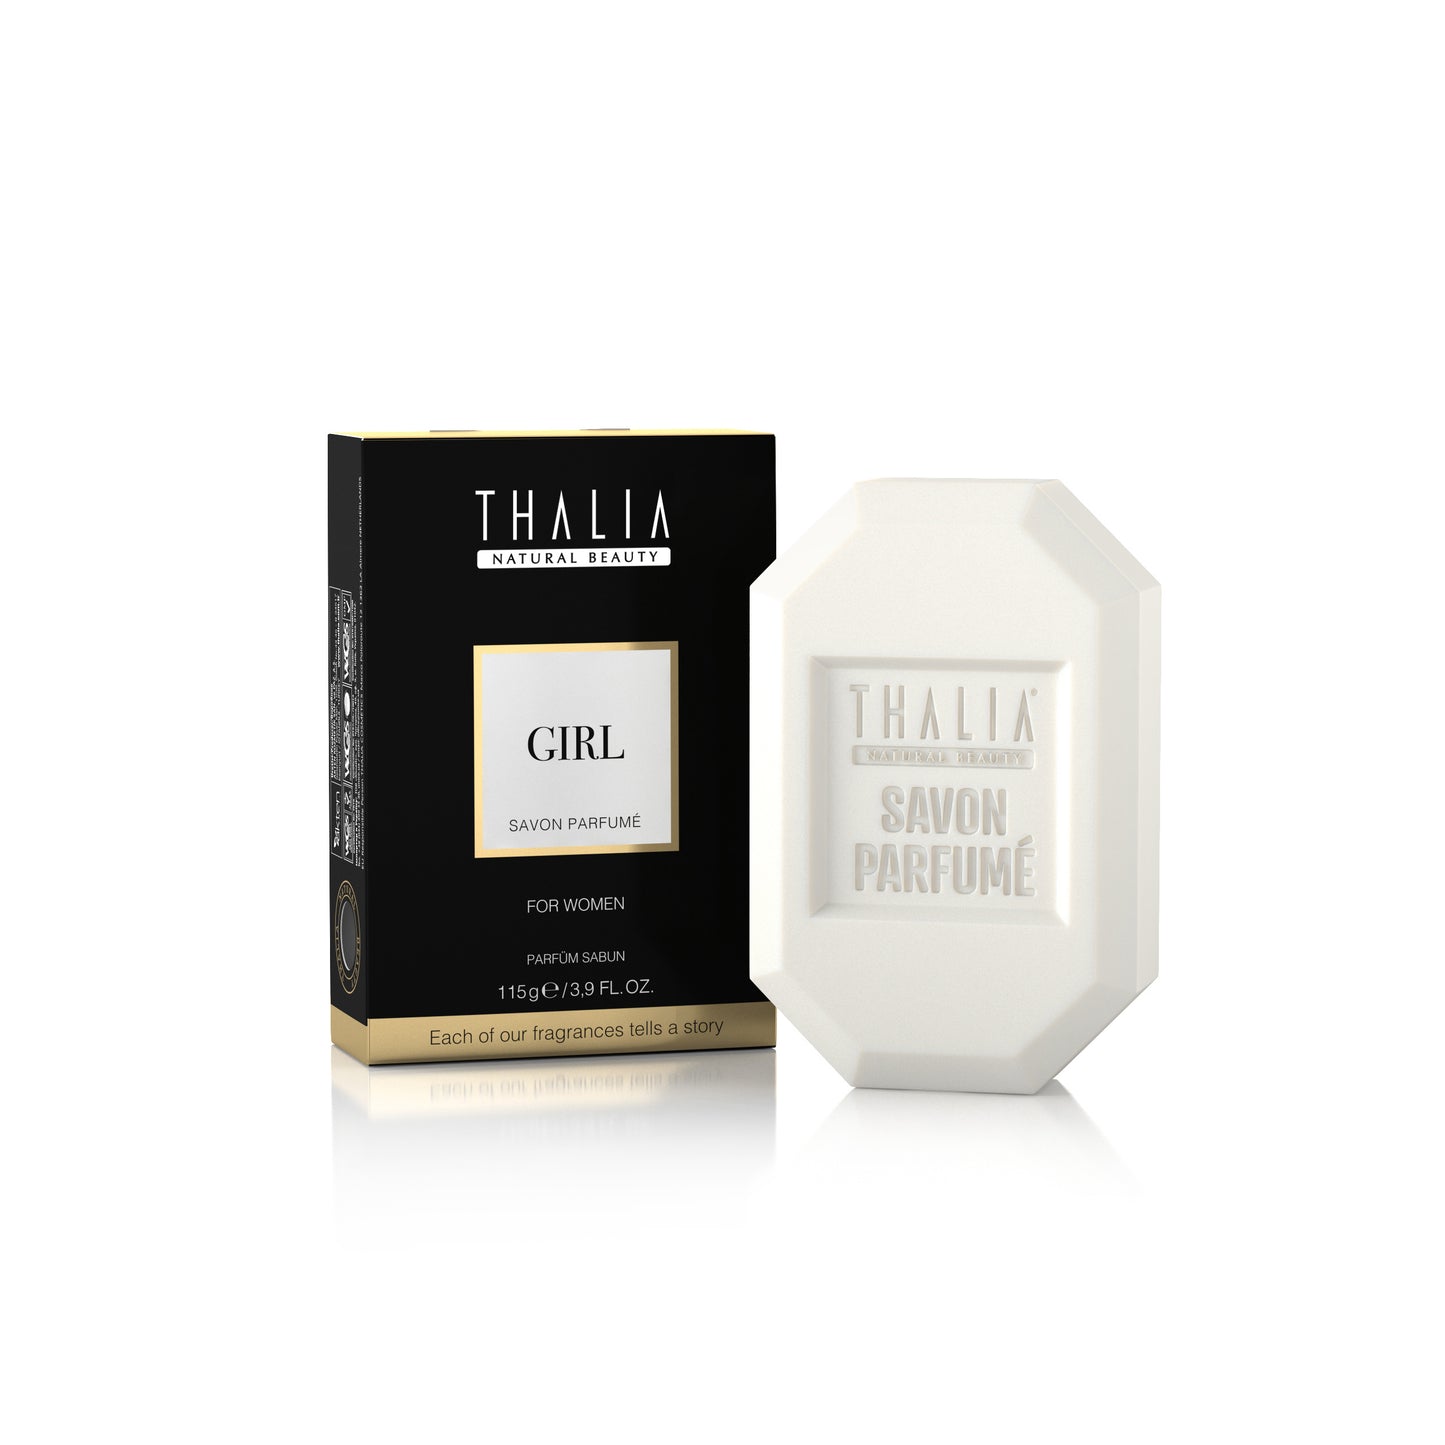 Sapun me Parfum të Përqëndruar Thalia Girl